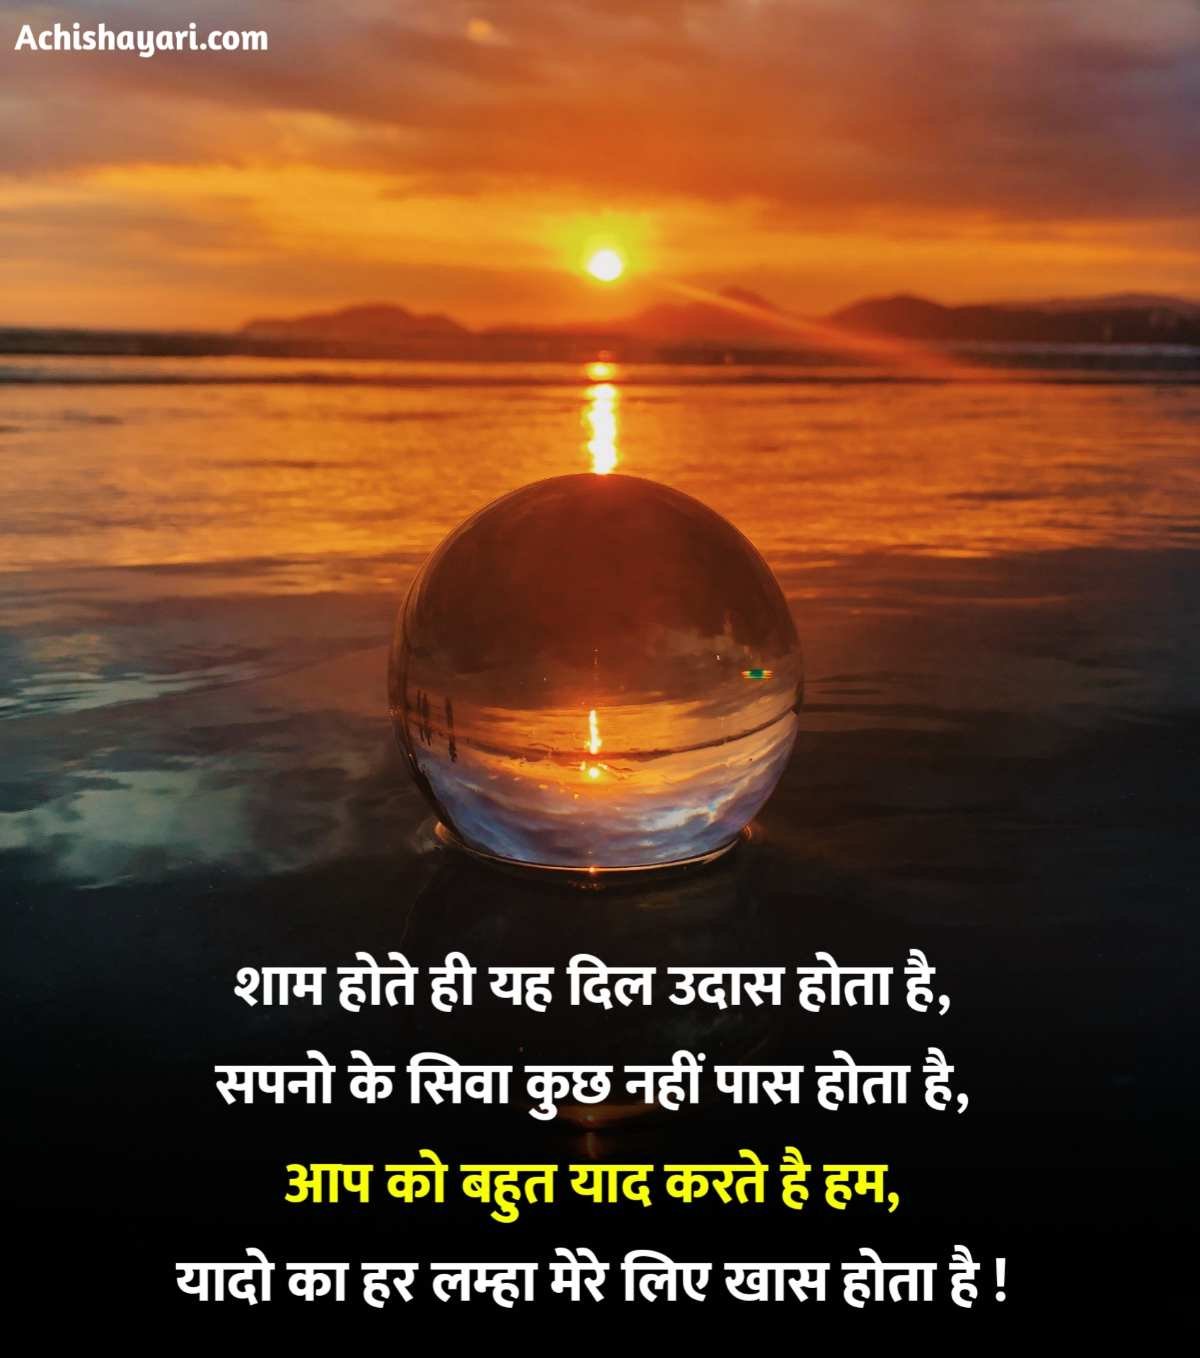 Good Evening Shayari image in Hindi